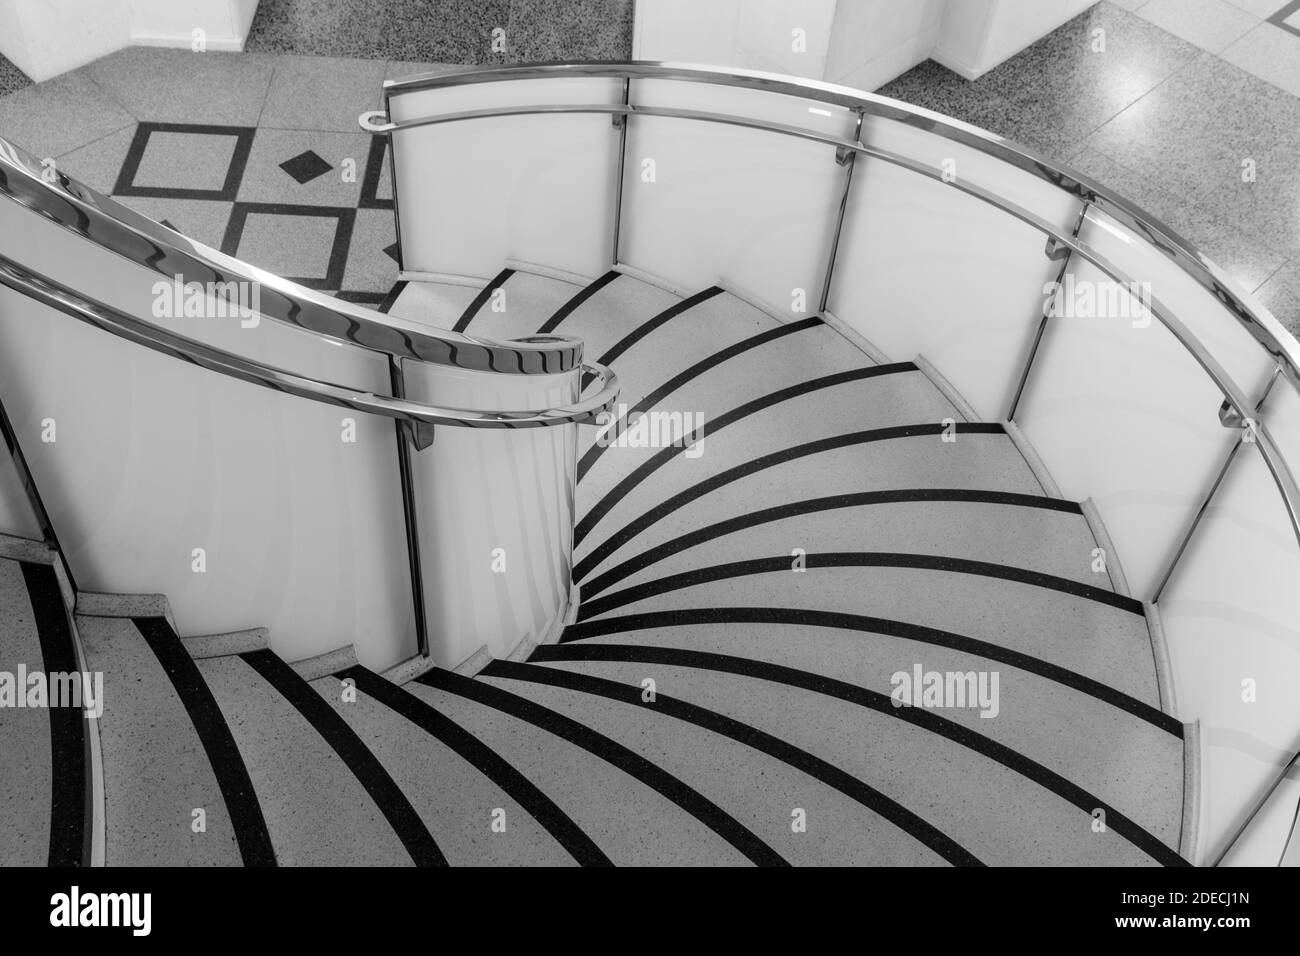 Escalier en colimaçon, détail avec plancher de terazzo sur les escaliers à Tate Britain, monochrome, Londres, Angleterre, Royaume-Uni Banque D'Images